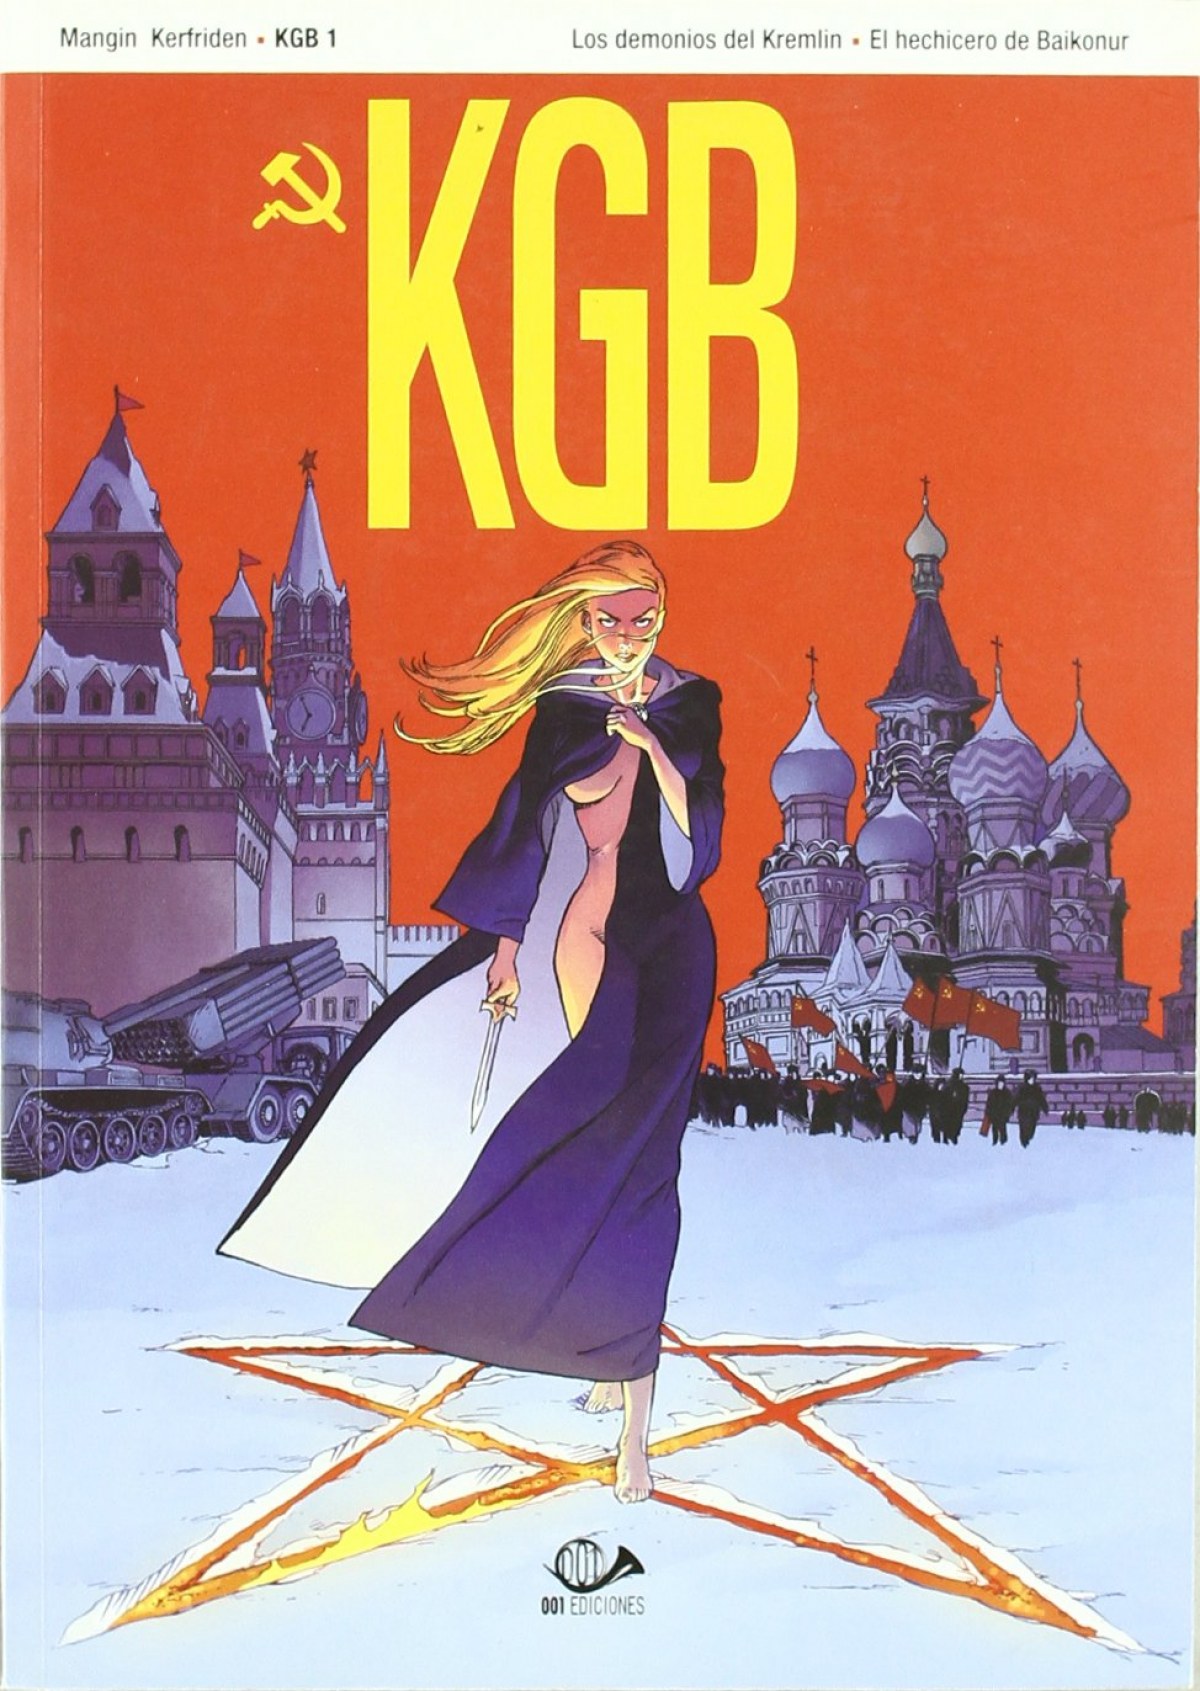 Kgb 01 (comic) los demonios del kremlin / el hechicero del baikonur - Vv.Aa.